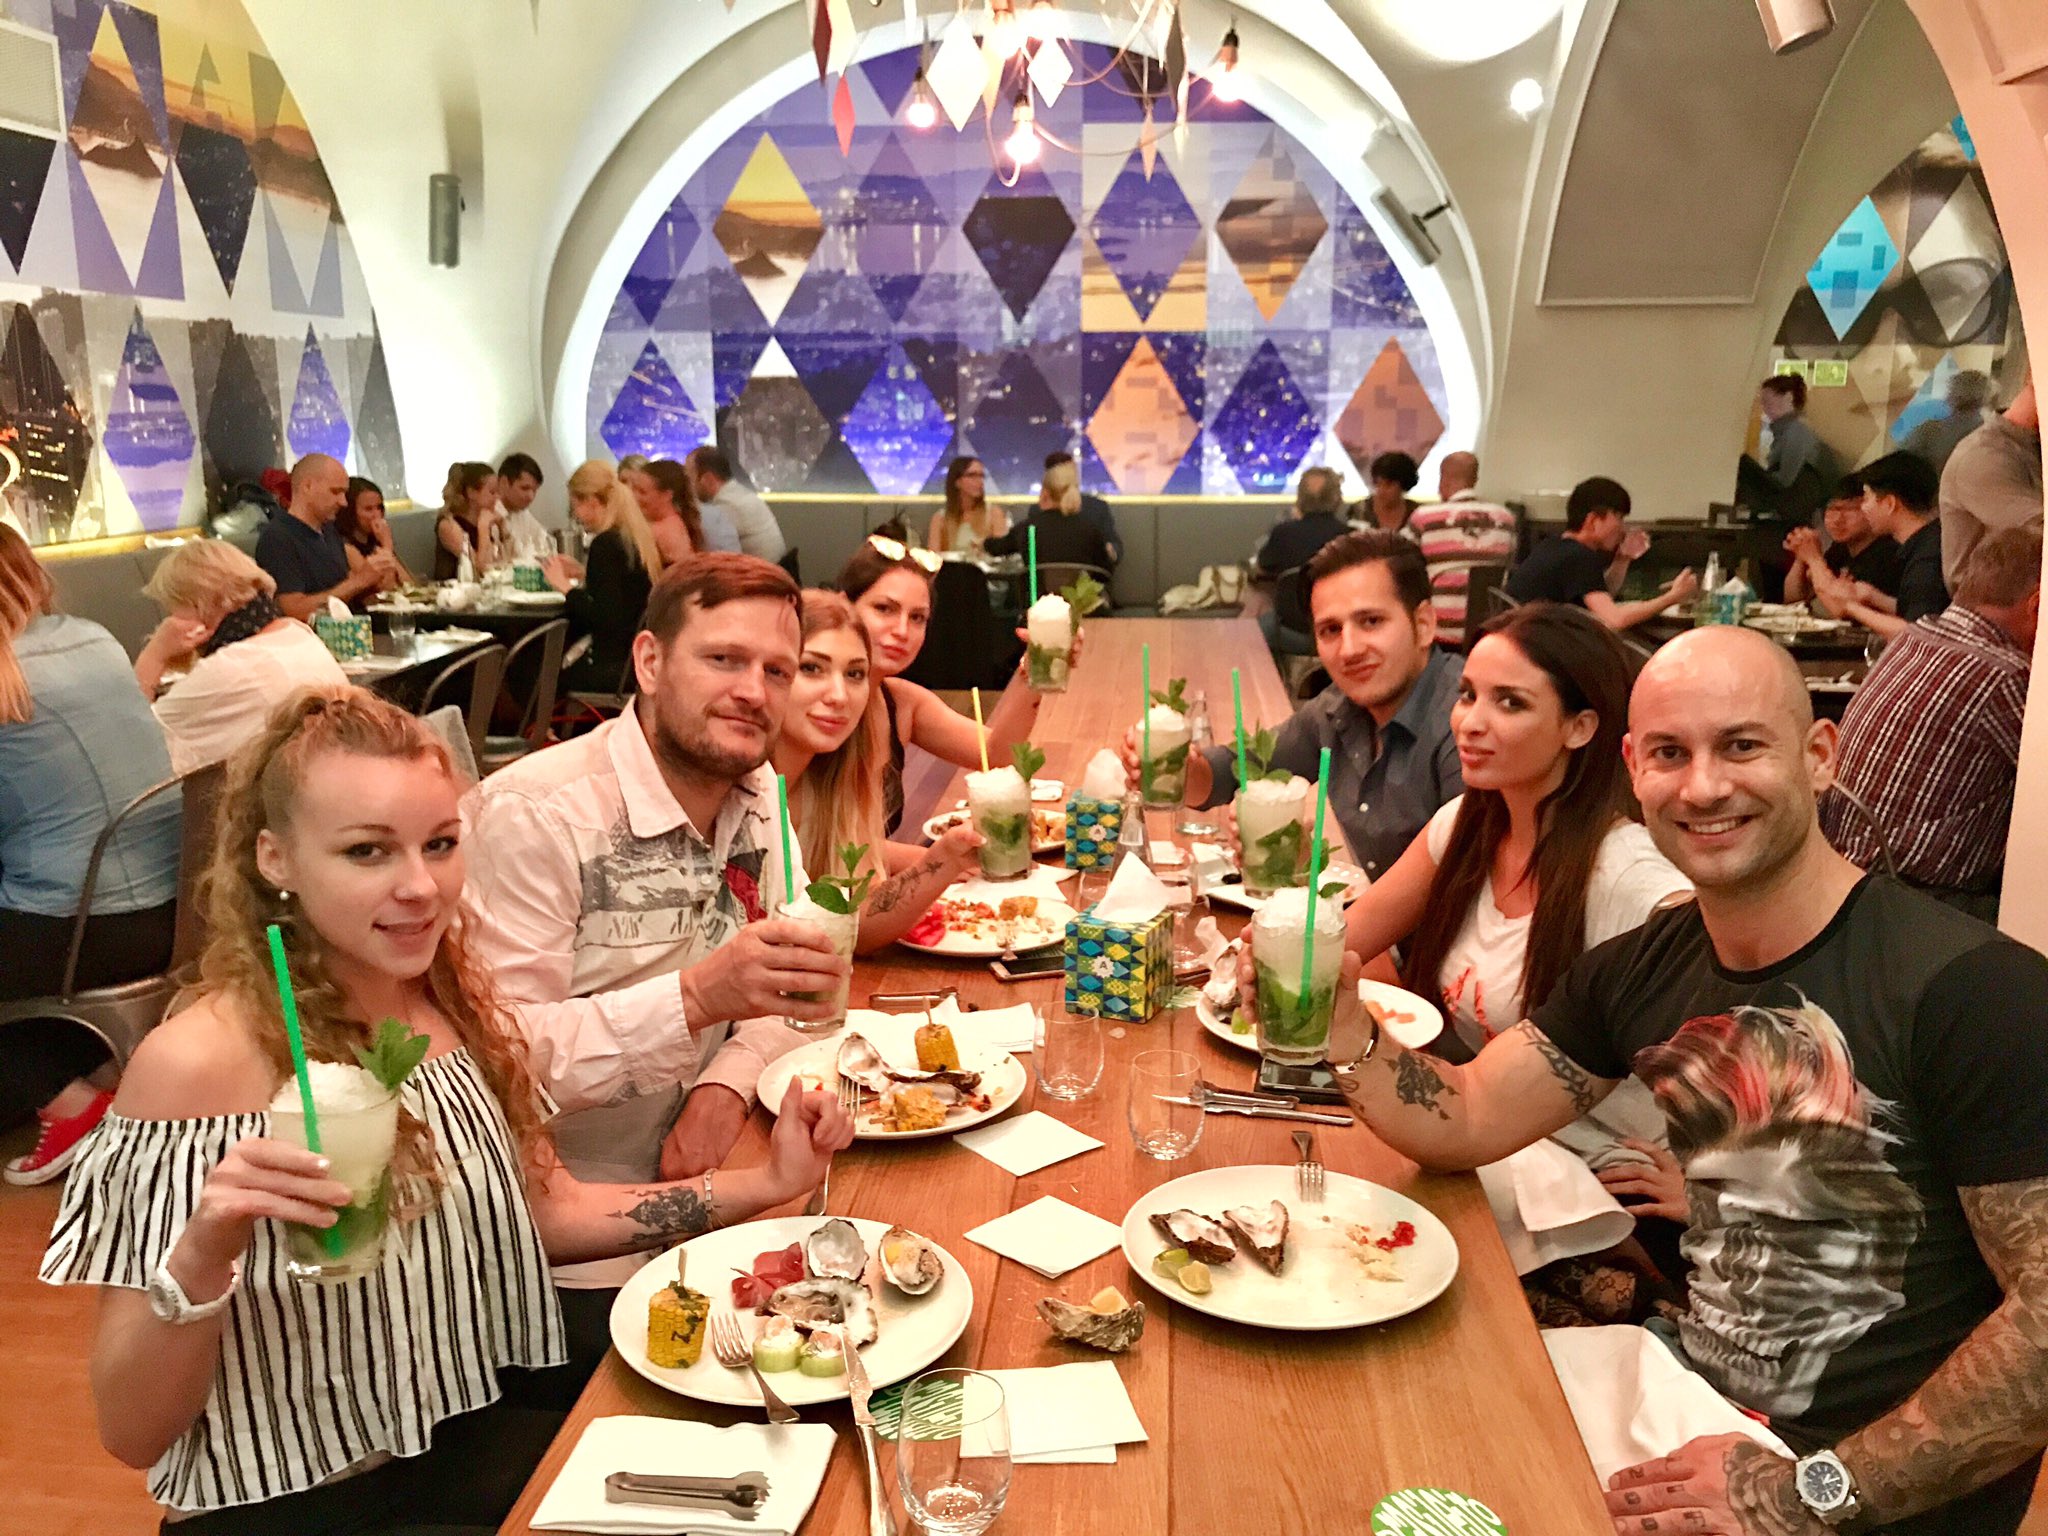 Dinner with friends in Prague @Mikeangeloxxx @anthonxgaultier @ianscottx ☺ https://t.co/wEF8H5zStq